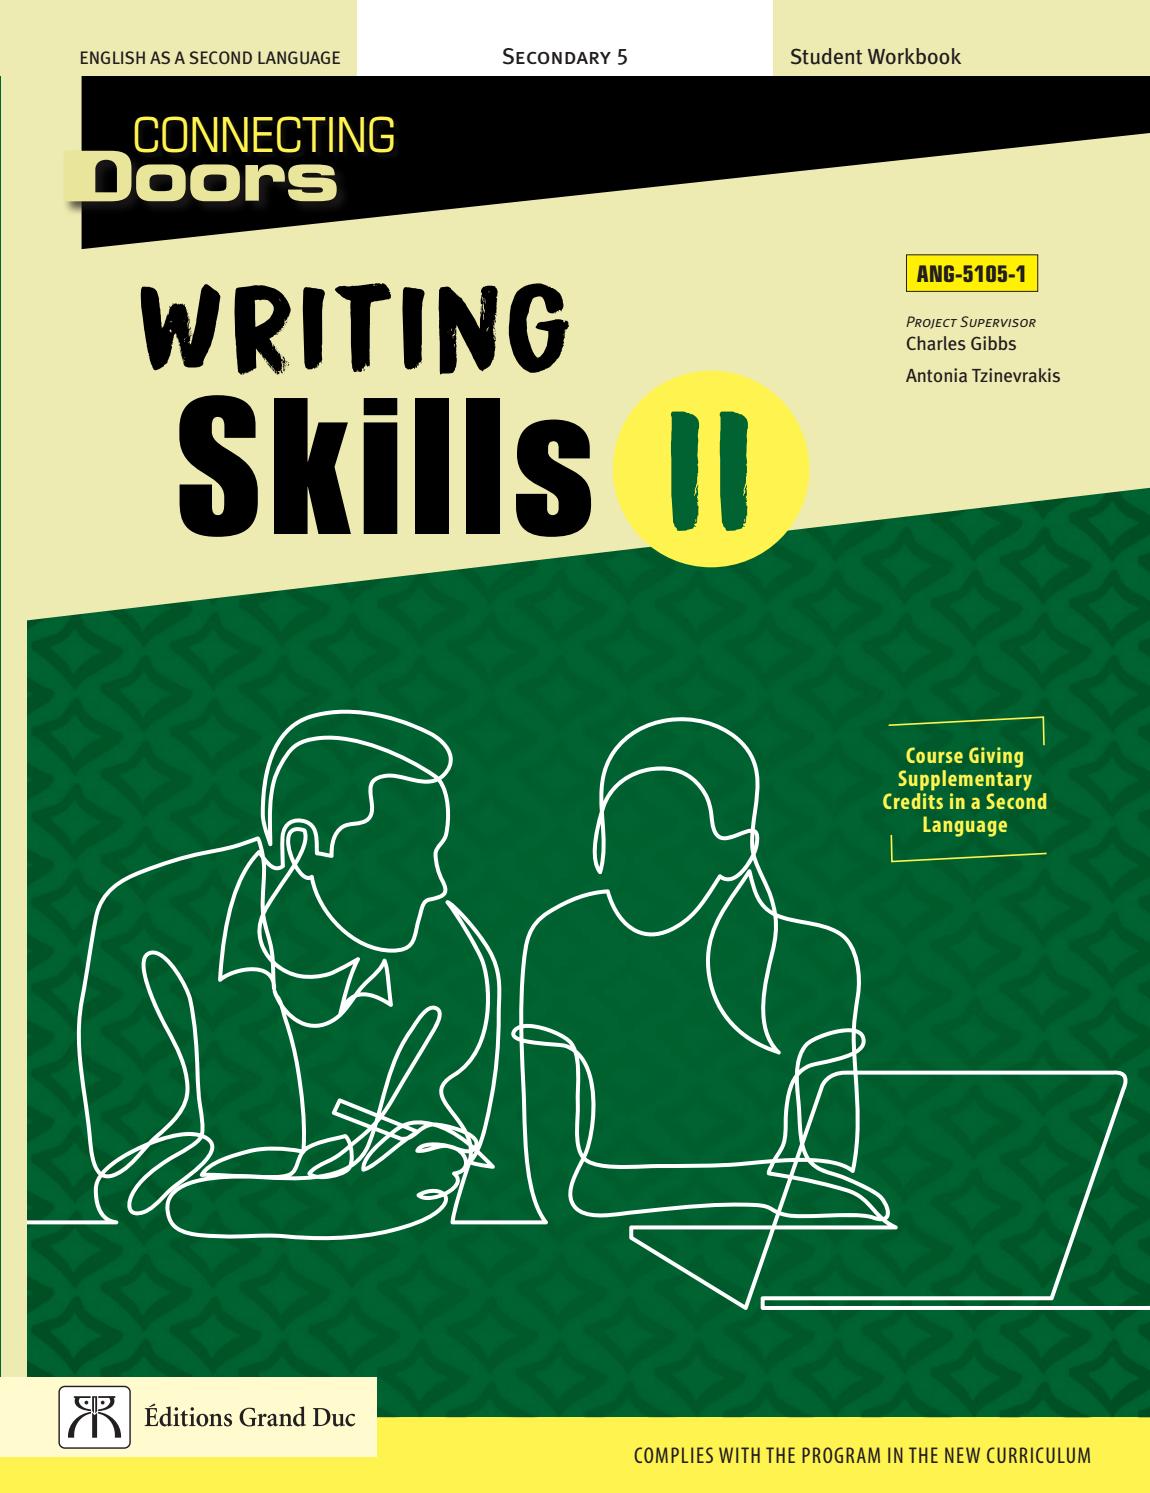 ANG-5105-1 Writing Skills II